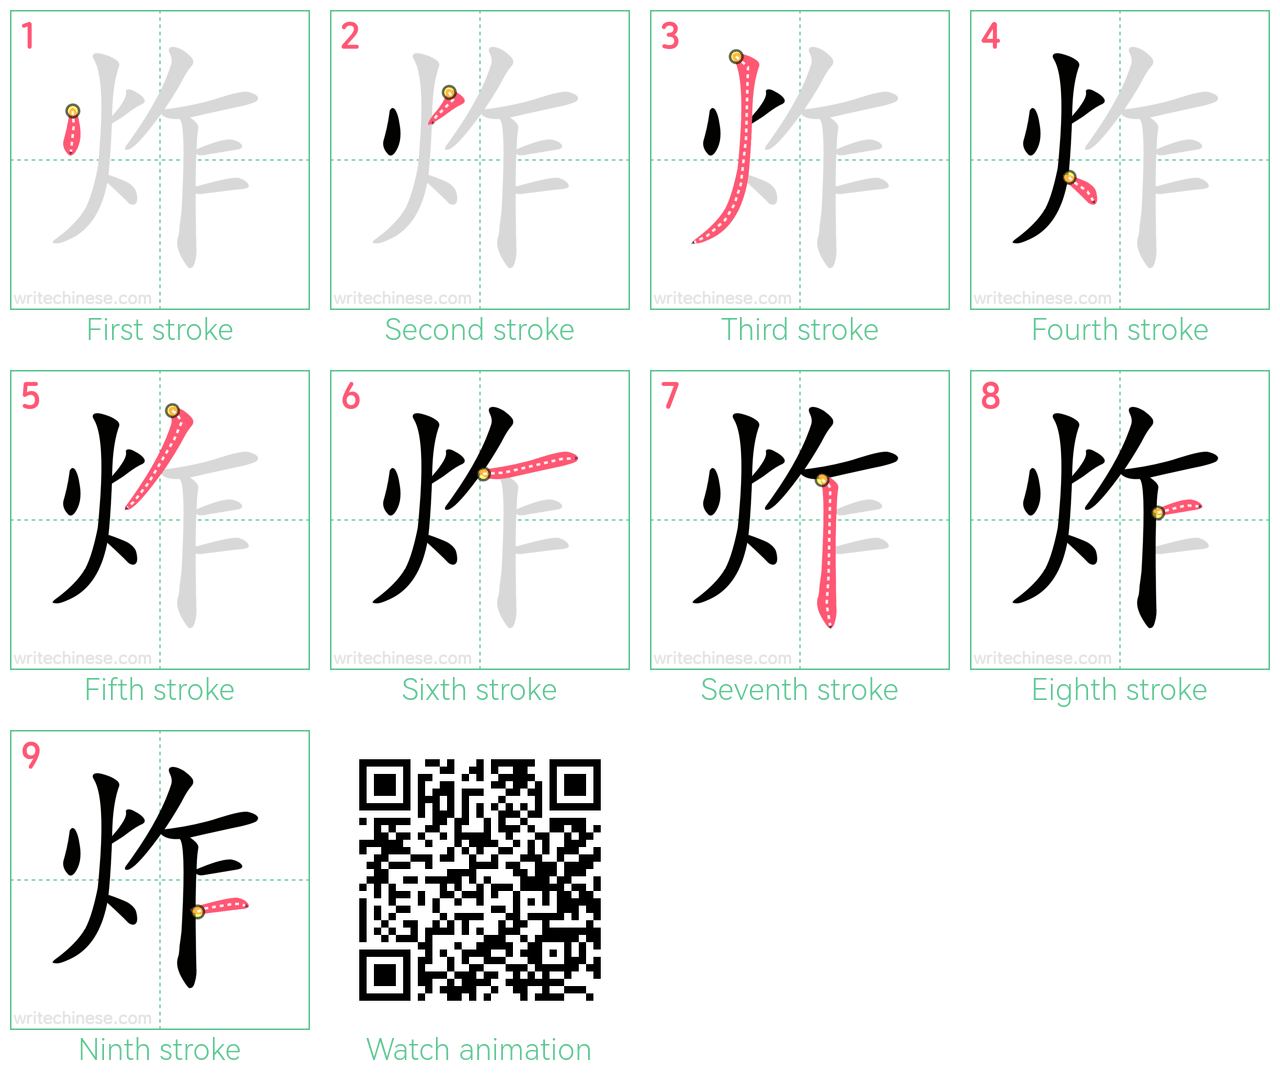 炸 step-by-step stroke order diagrams